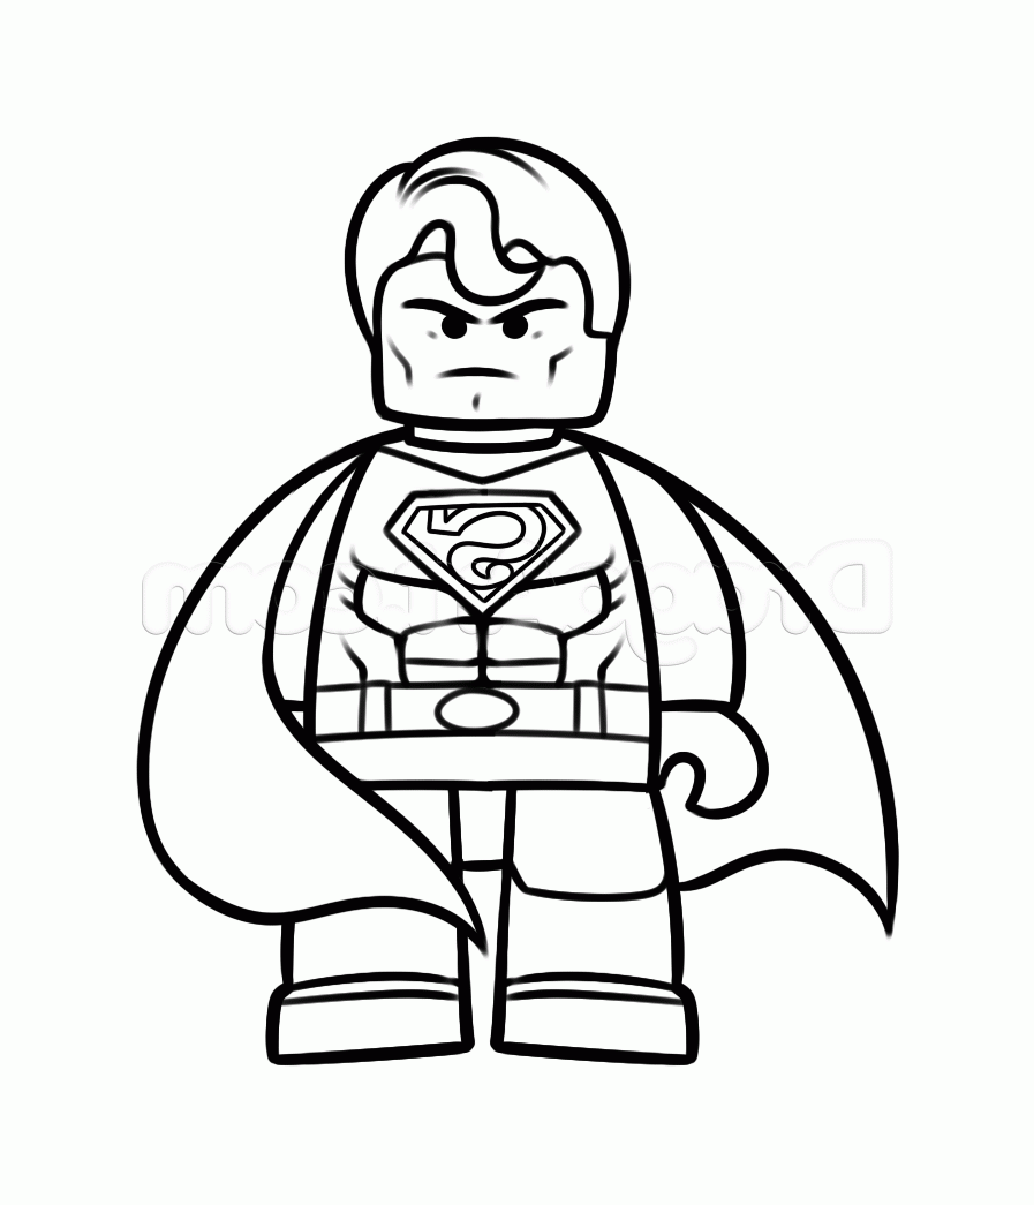 Super-Homem Lego 100% puros briquetes